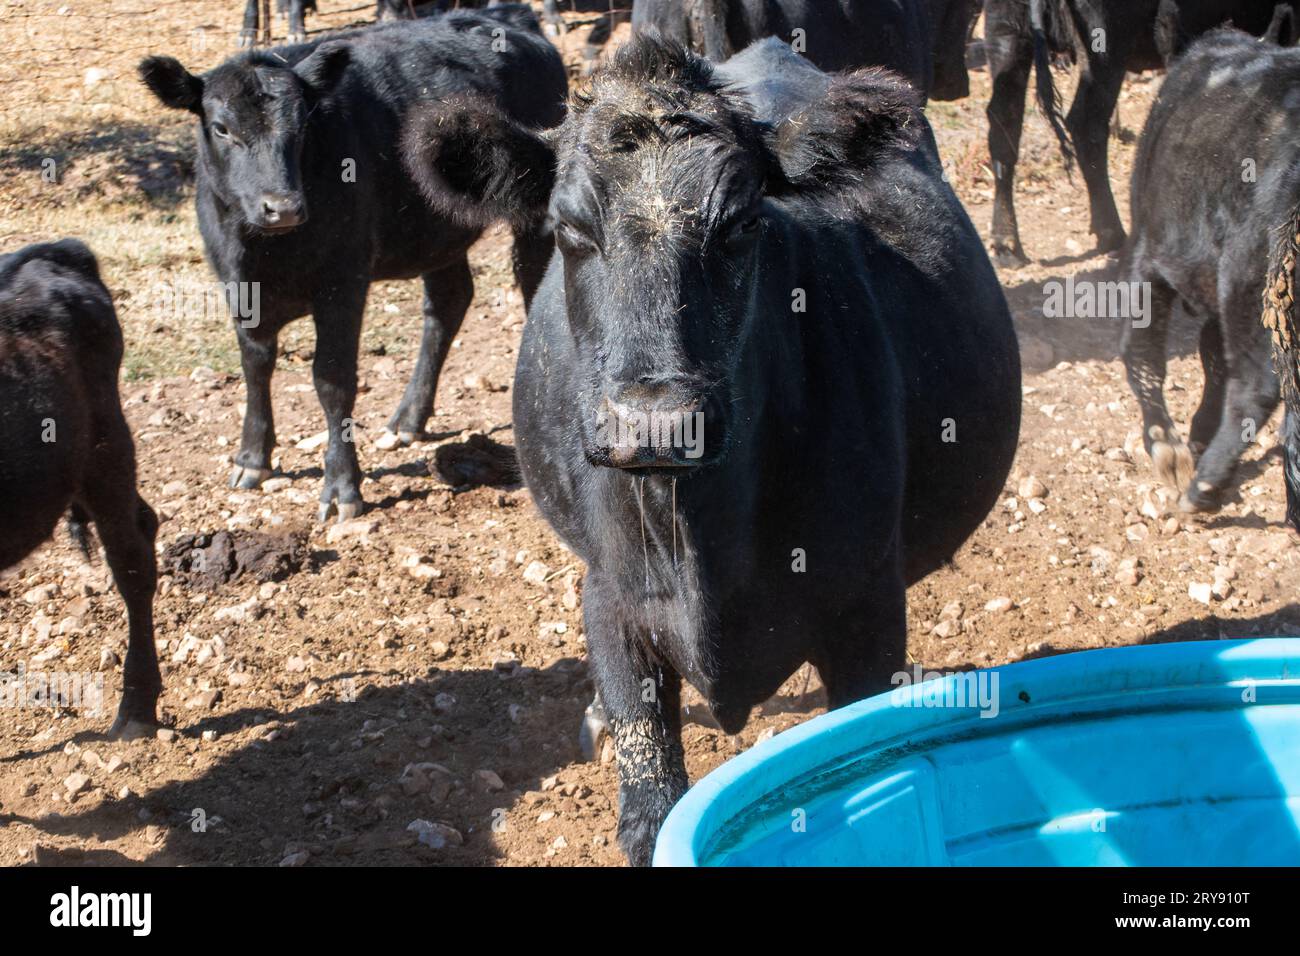 Una vez que el agua comienza a bombear en el tanque, no toma mucho tiempo para que lleguen las vacas angus negras. Bokeh. Foto de stock